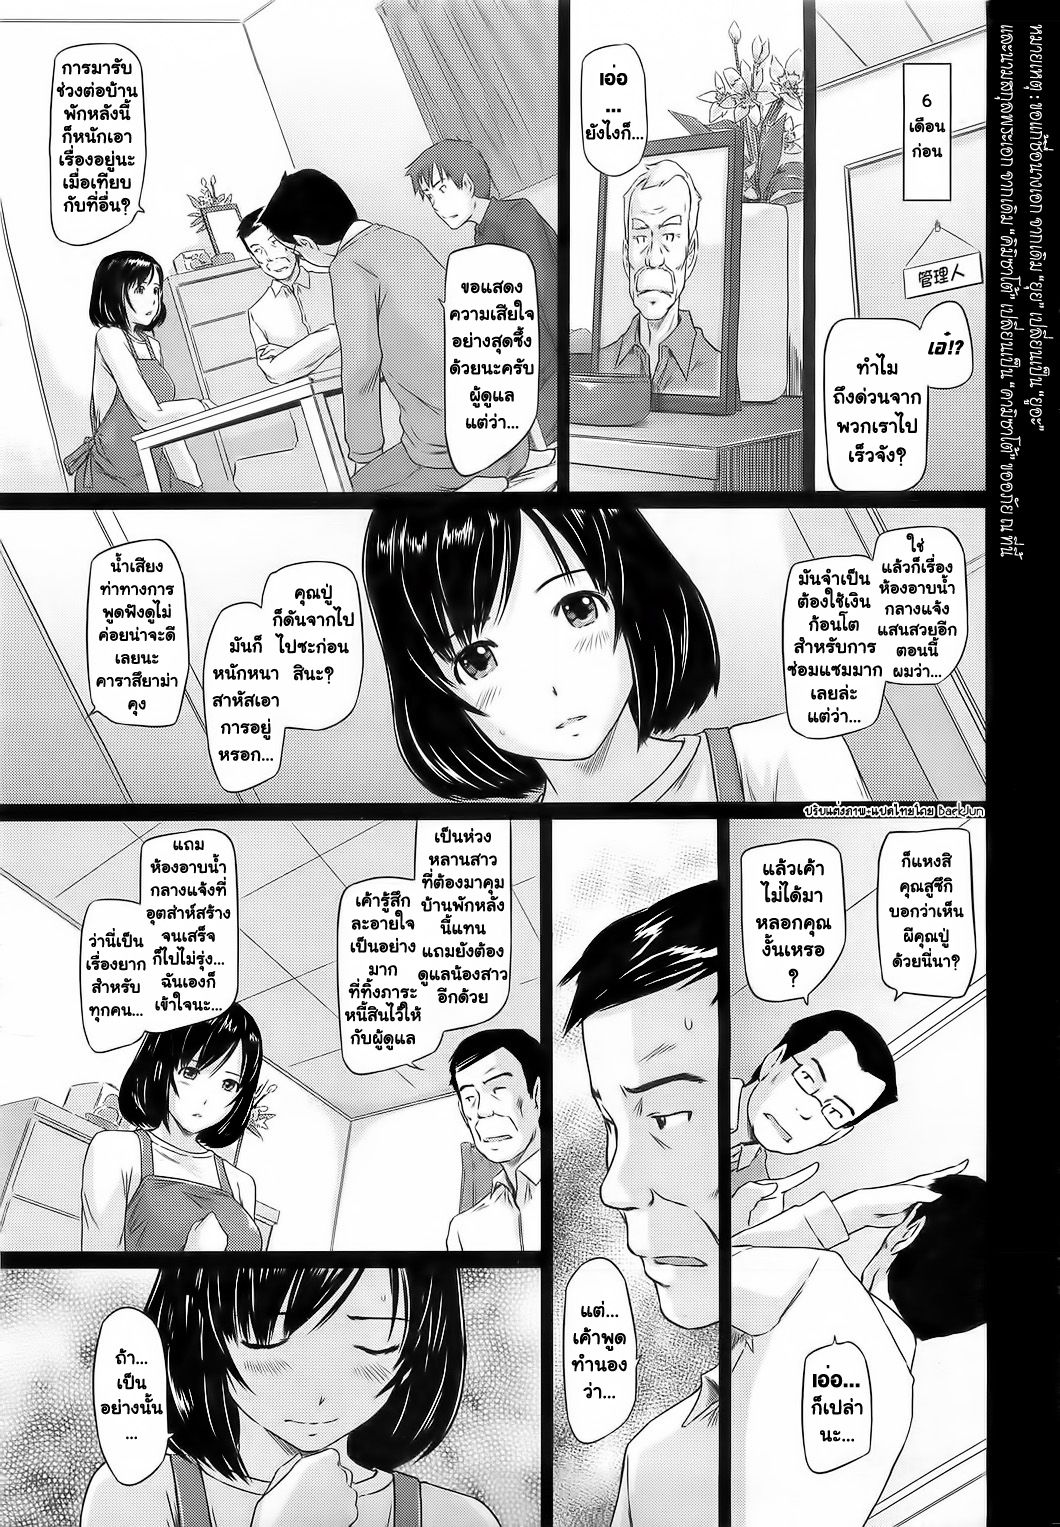 ยินดีต้อนรับสู่ โทโคฮารุโซว 2 - หน้า 5